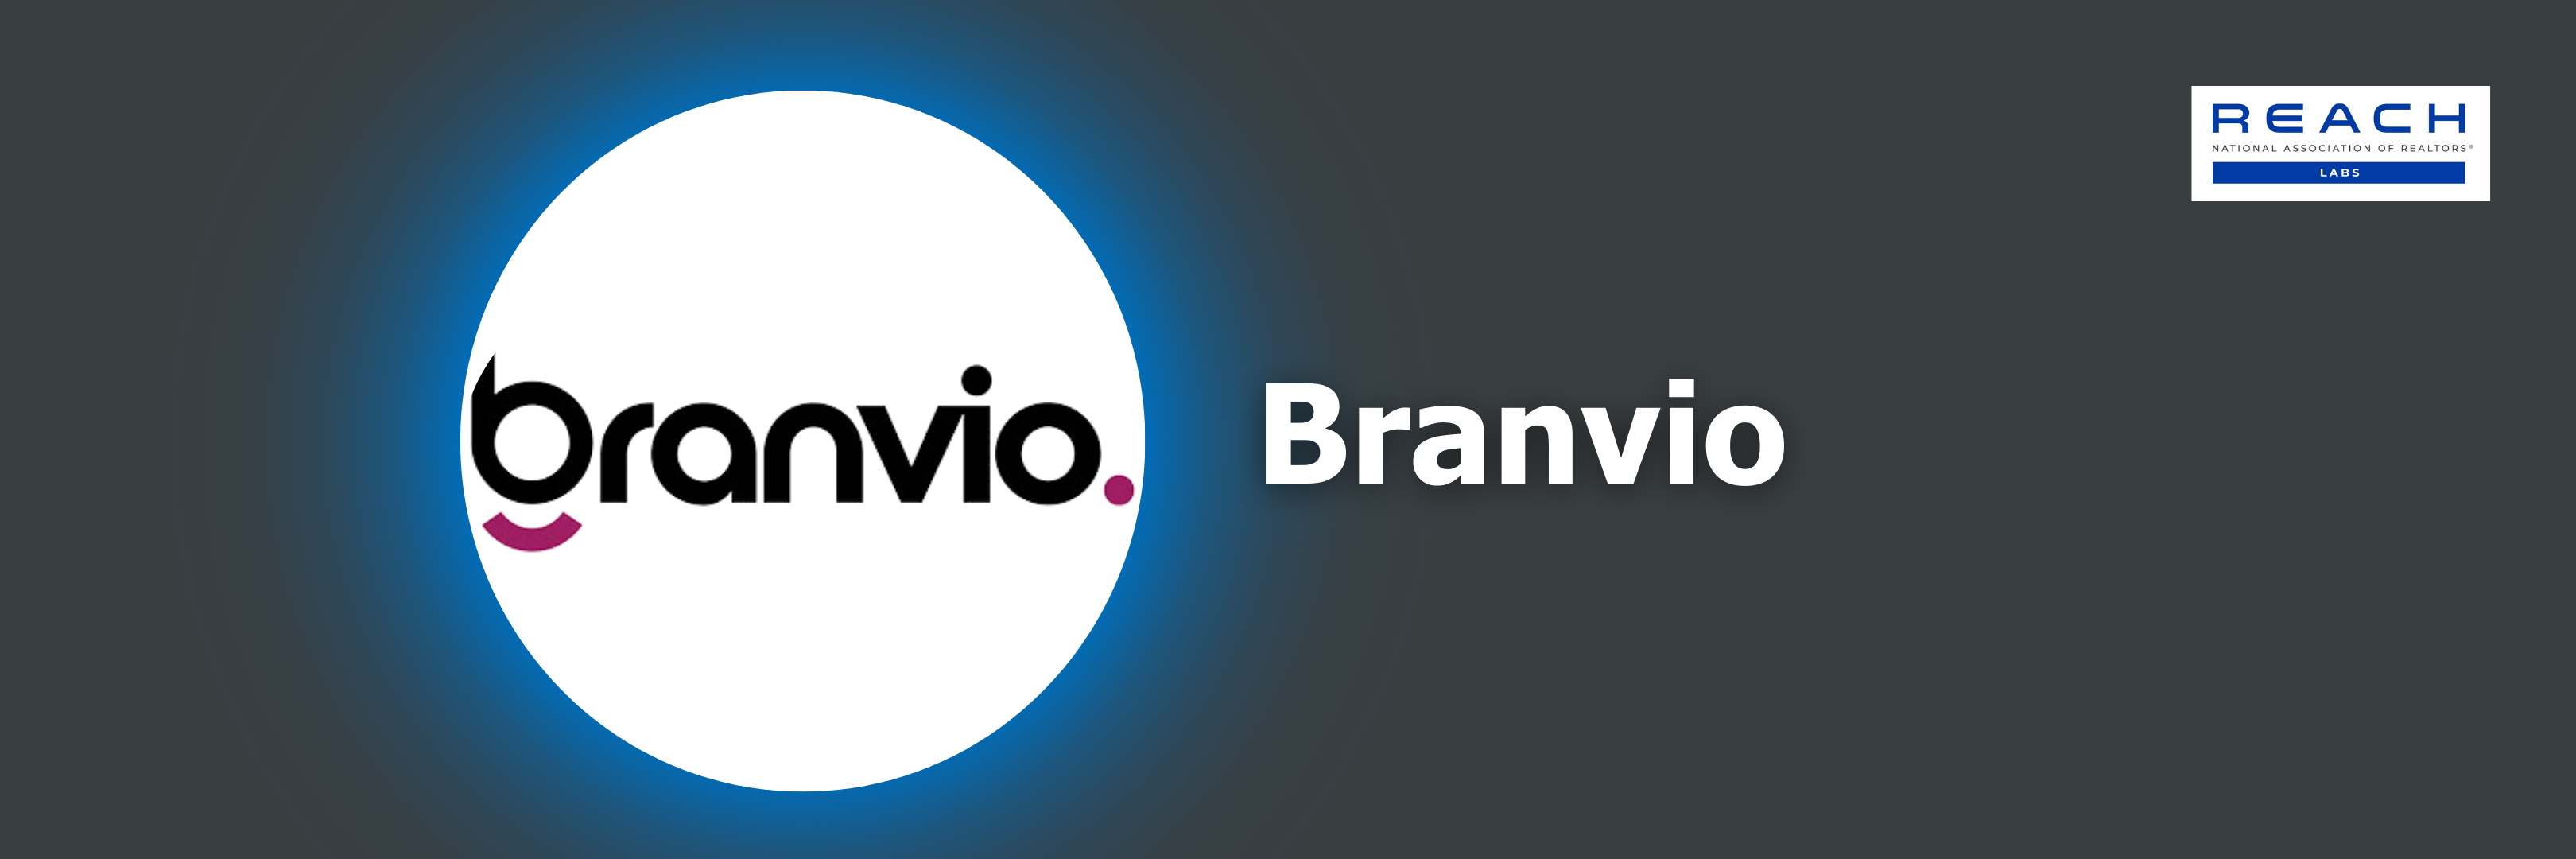 Branvio